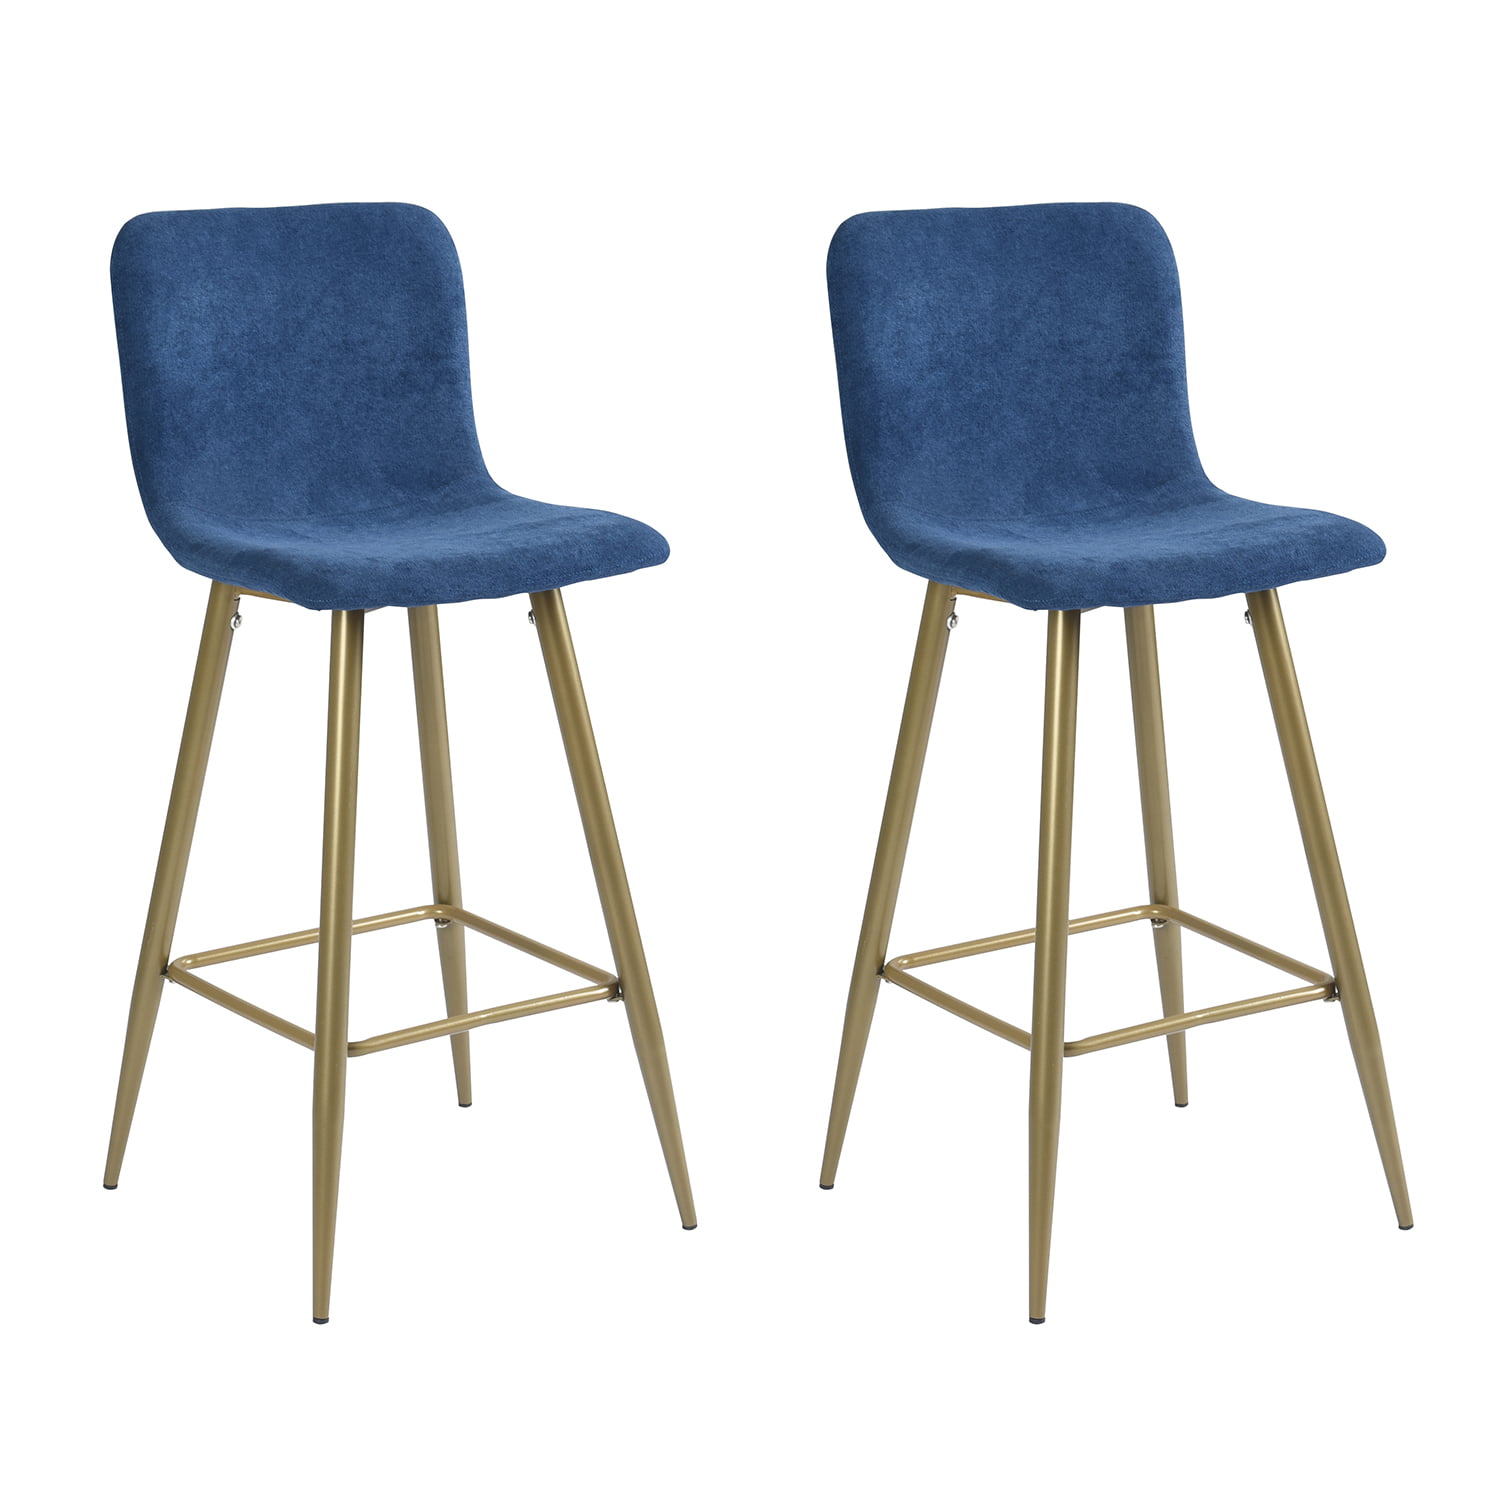 Blue Upholstered Bar Stools - Set of 2